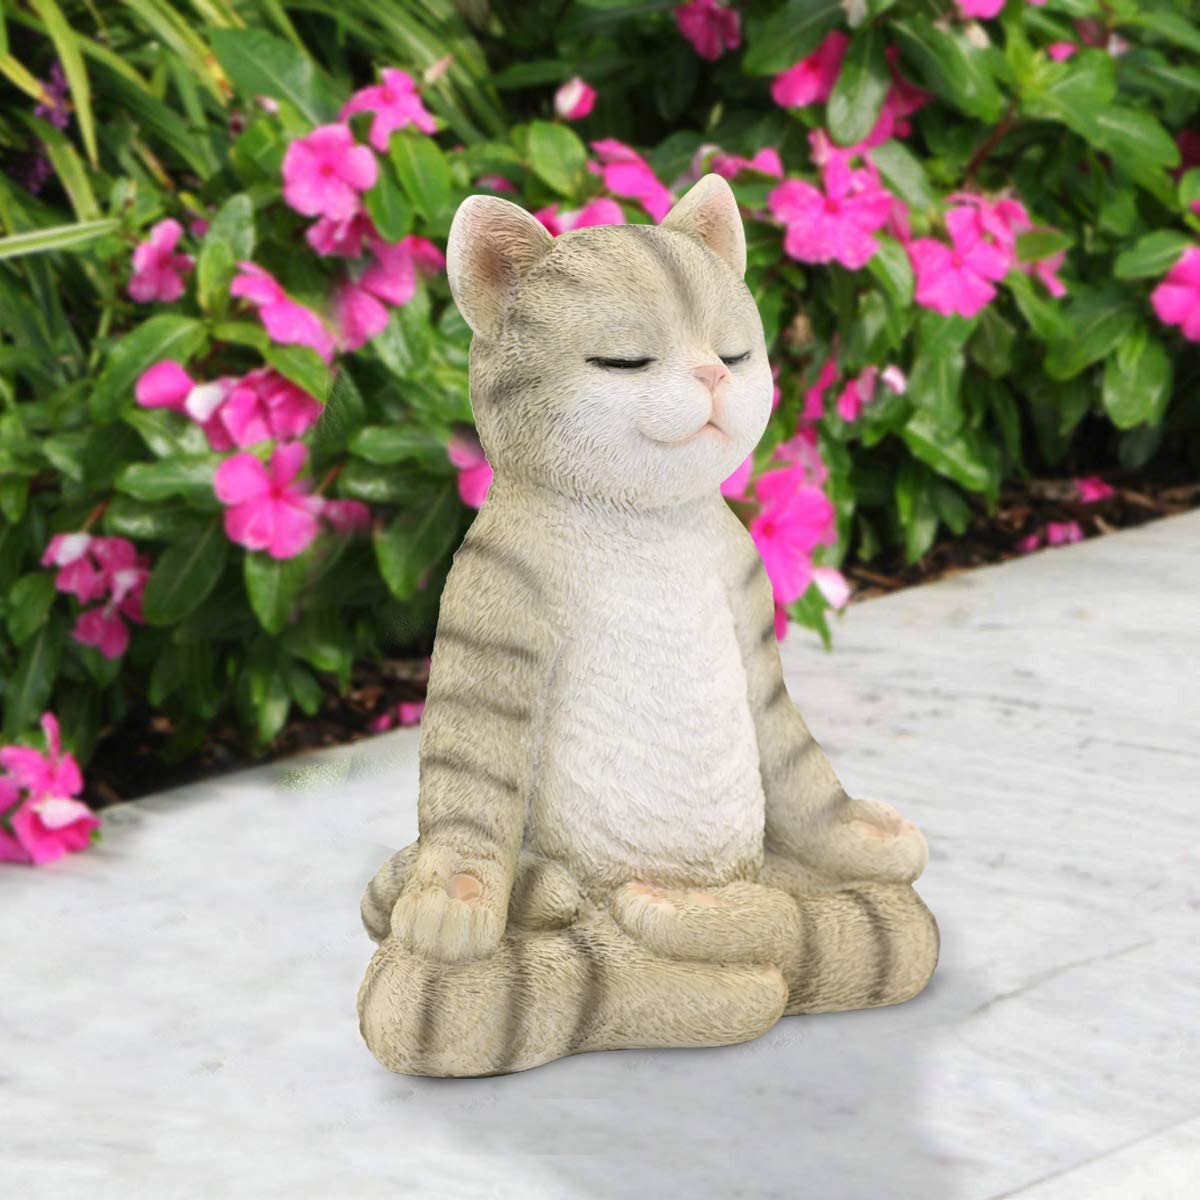 Meditating Zen Garden Cat Statue Figurine - Indoor/Outdoor Garden Cat Sculpture for Home,Garden,Patio, Deck,Porch Yard Art or Lawn Decoration,8.7" H(Gray Cat) - image 2 of 7